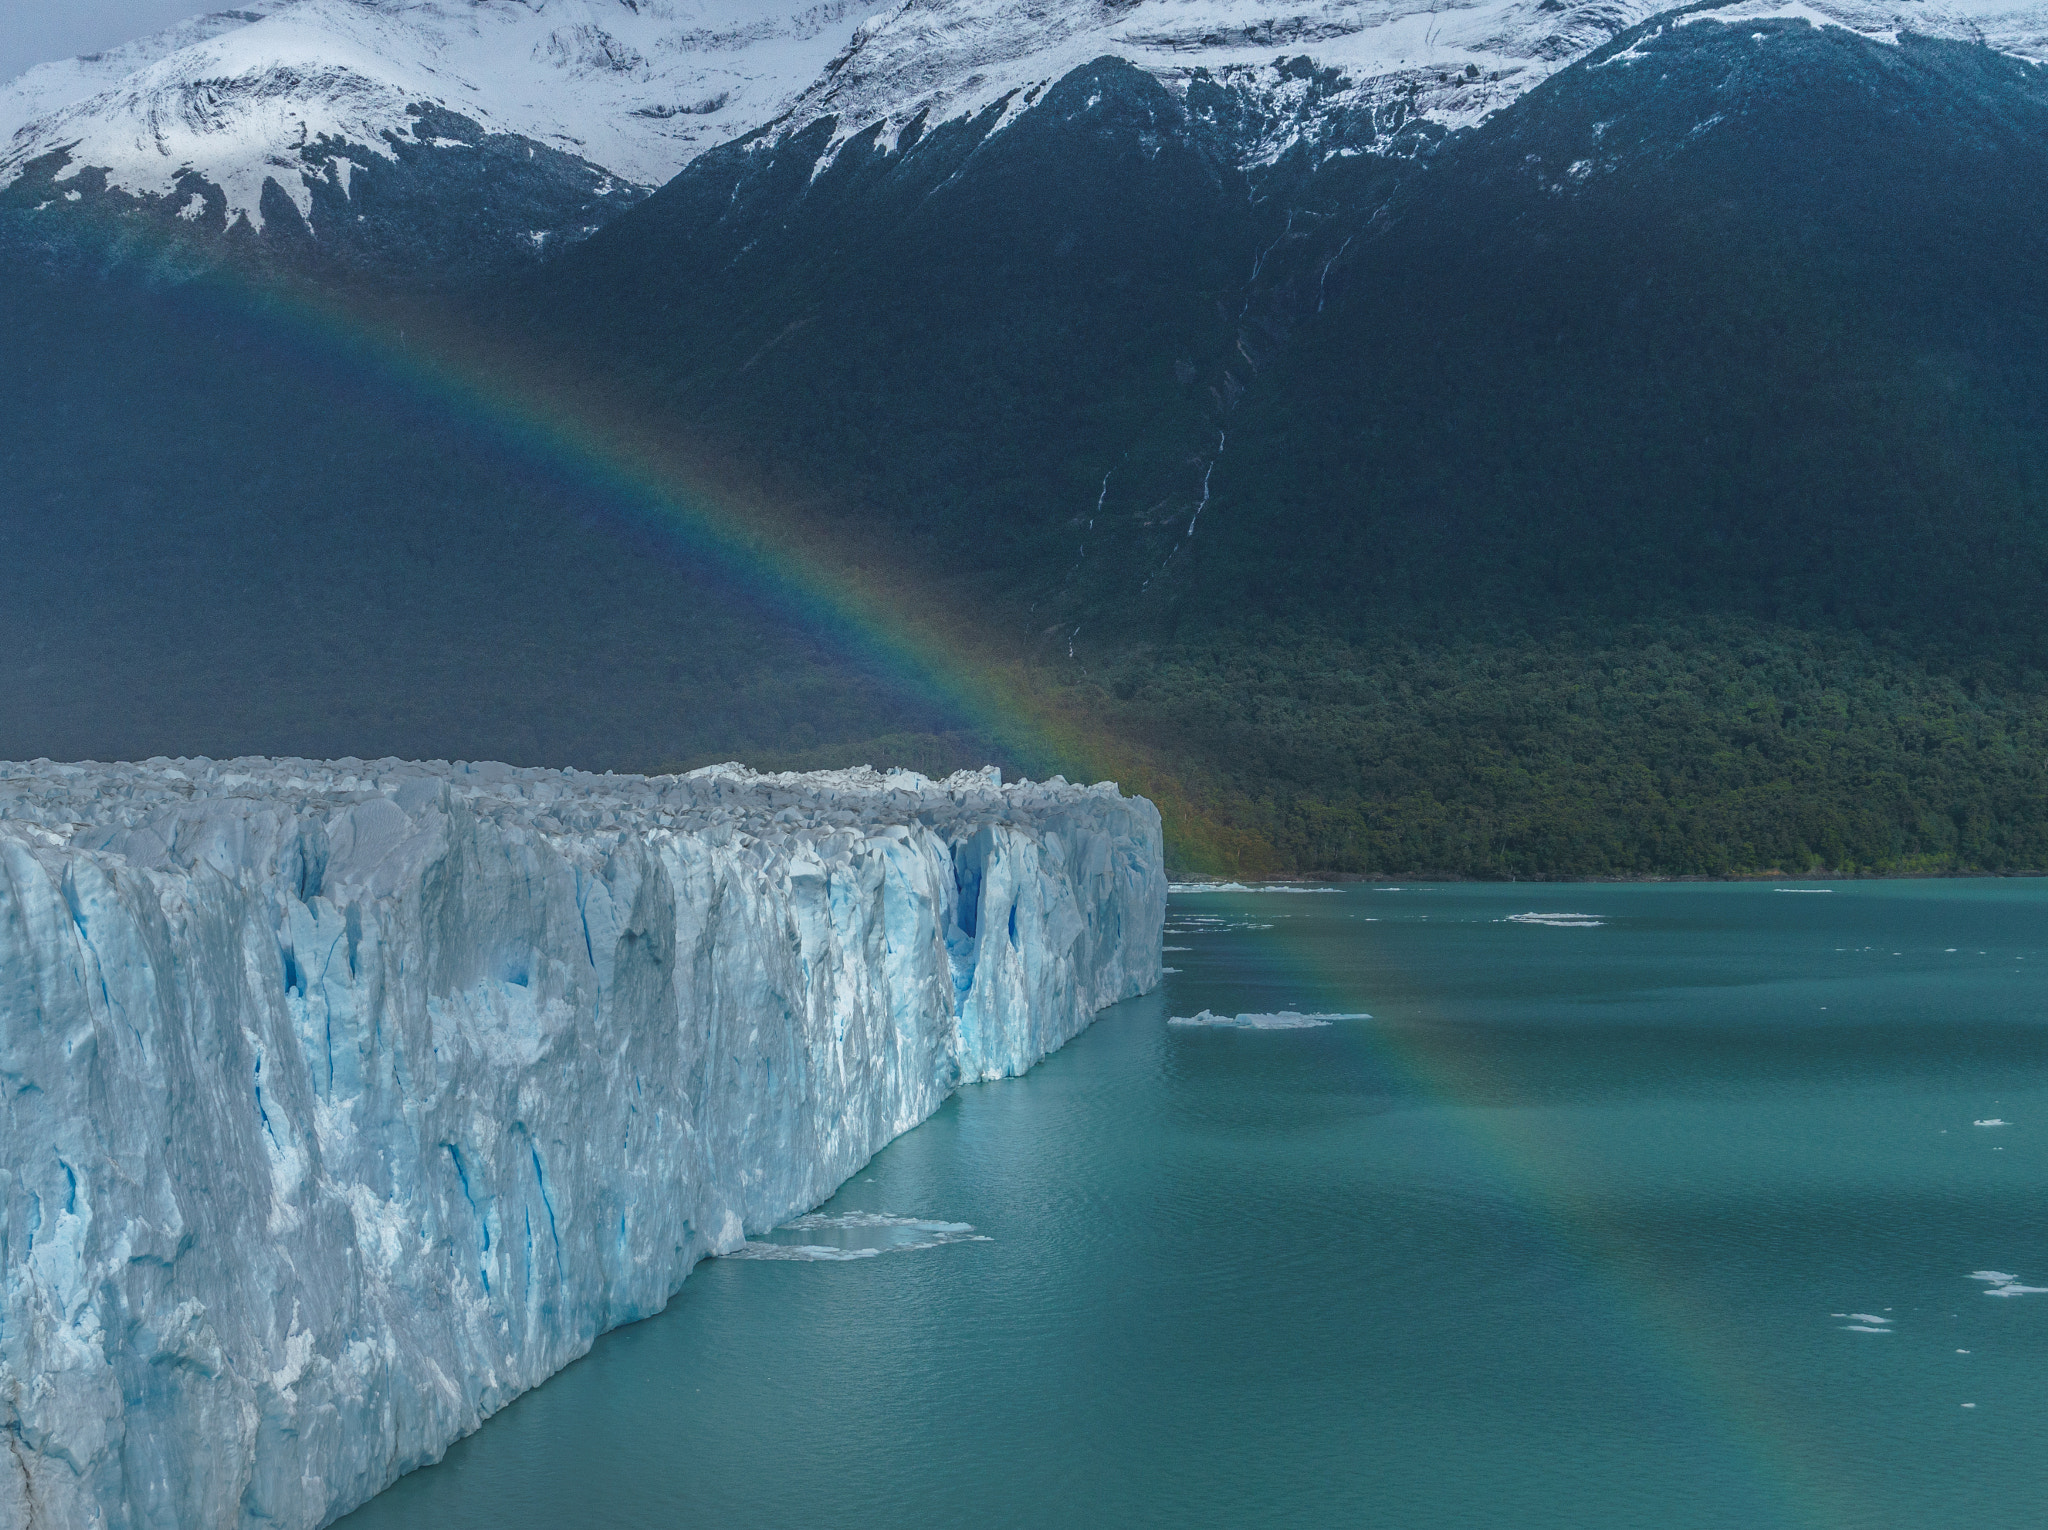 Sony a6300 + Sony FE 24-240mm F3.5-6.3 OSS sample photo. Rainbow over perito moreno glacier photography